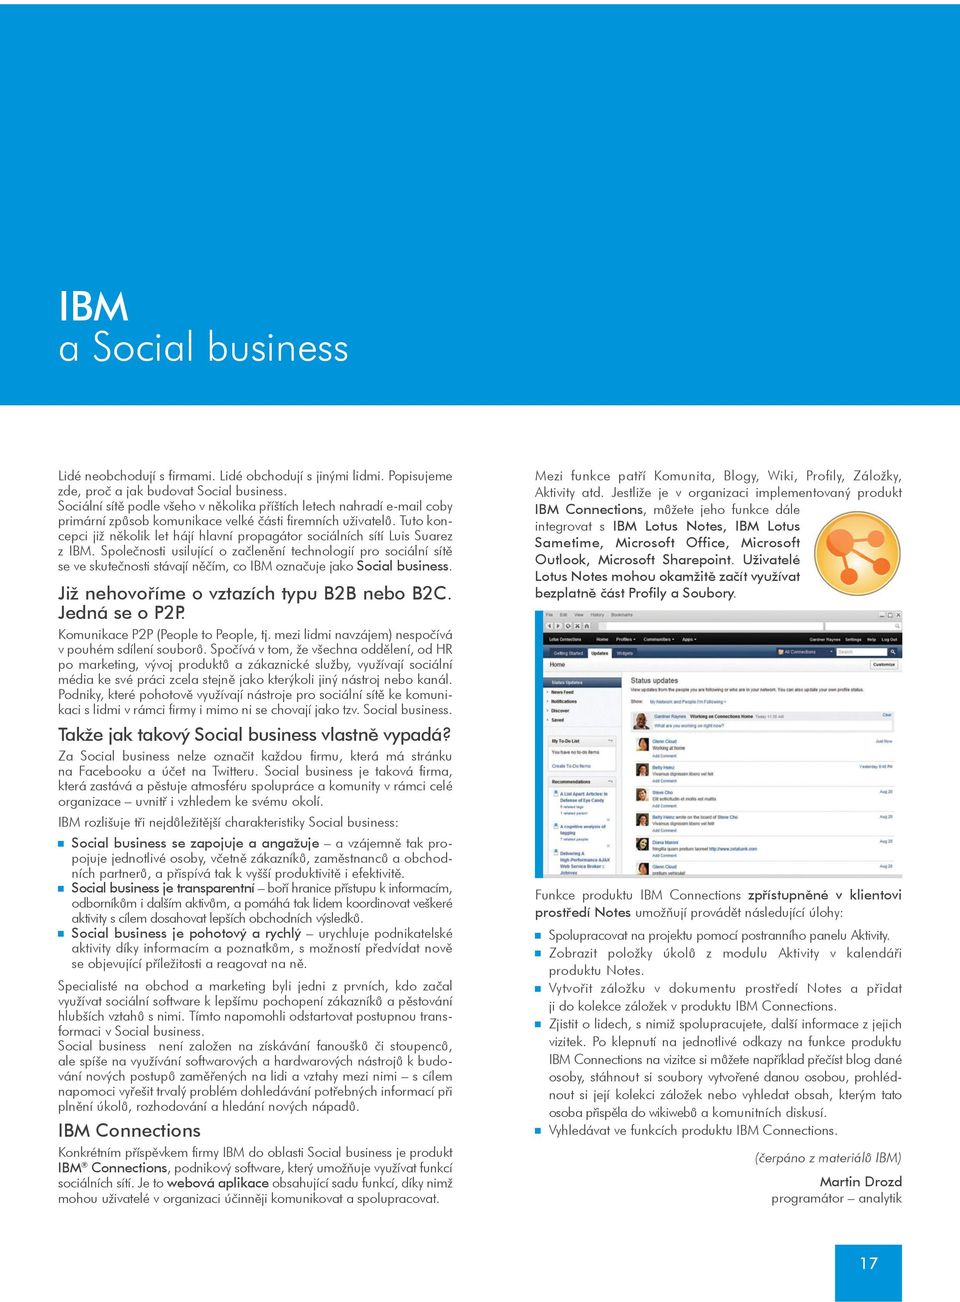 Tuto koncepci již nìkolik let hájí hlavní propagátor sociálních sítí Luis Suarez z IBM.